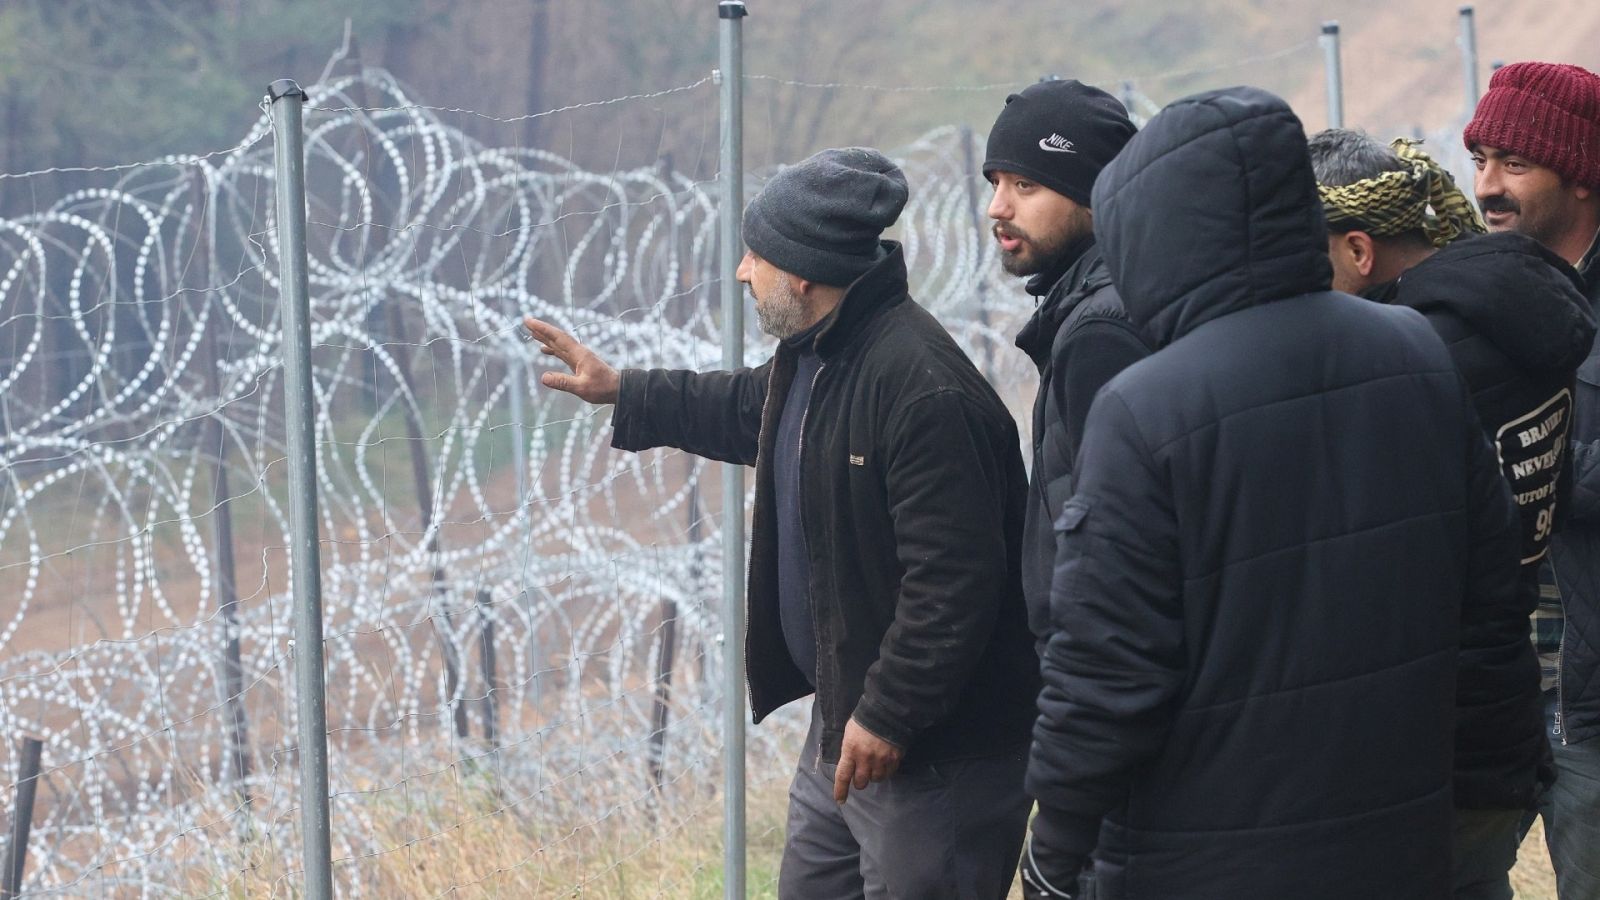 La UE considera un ataque la crisis en la frontera entre Polonia y Bielorrusia